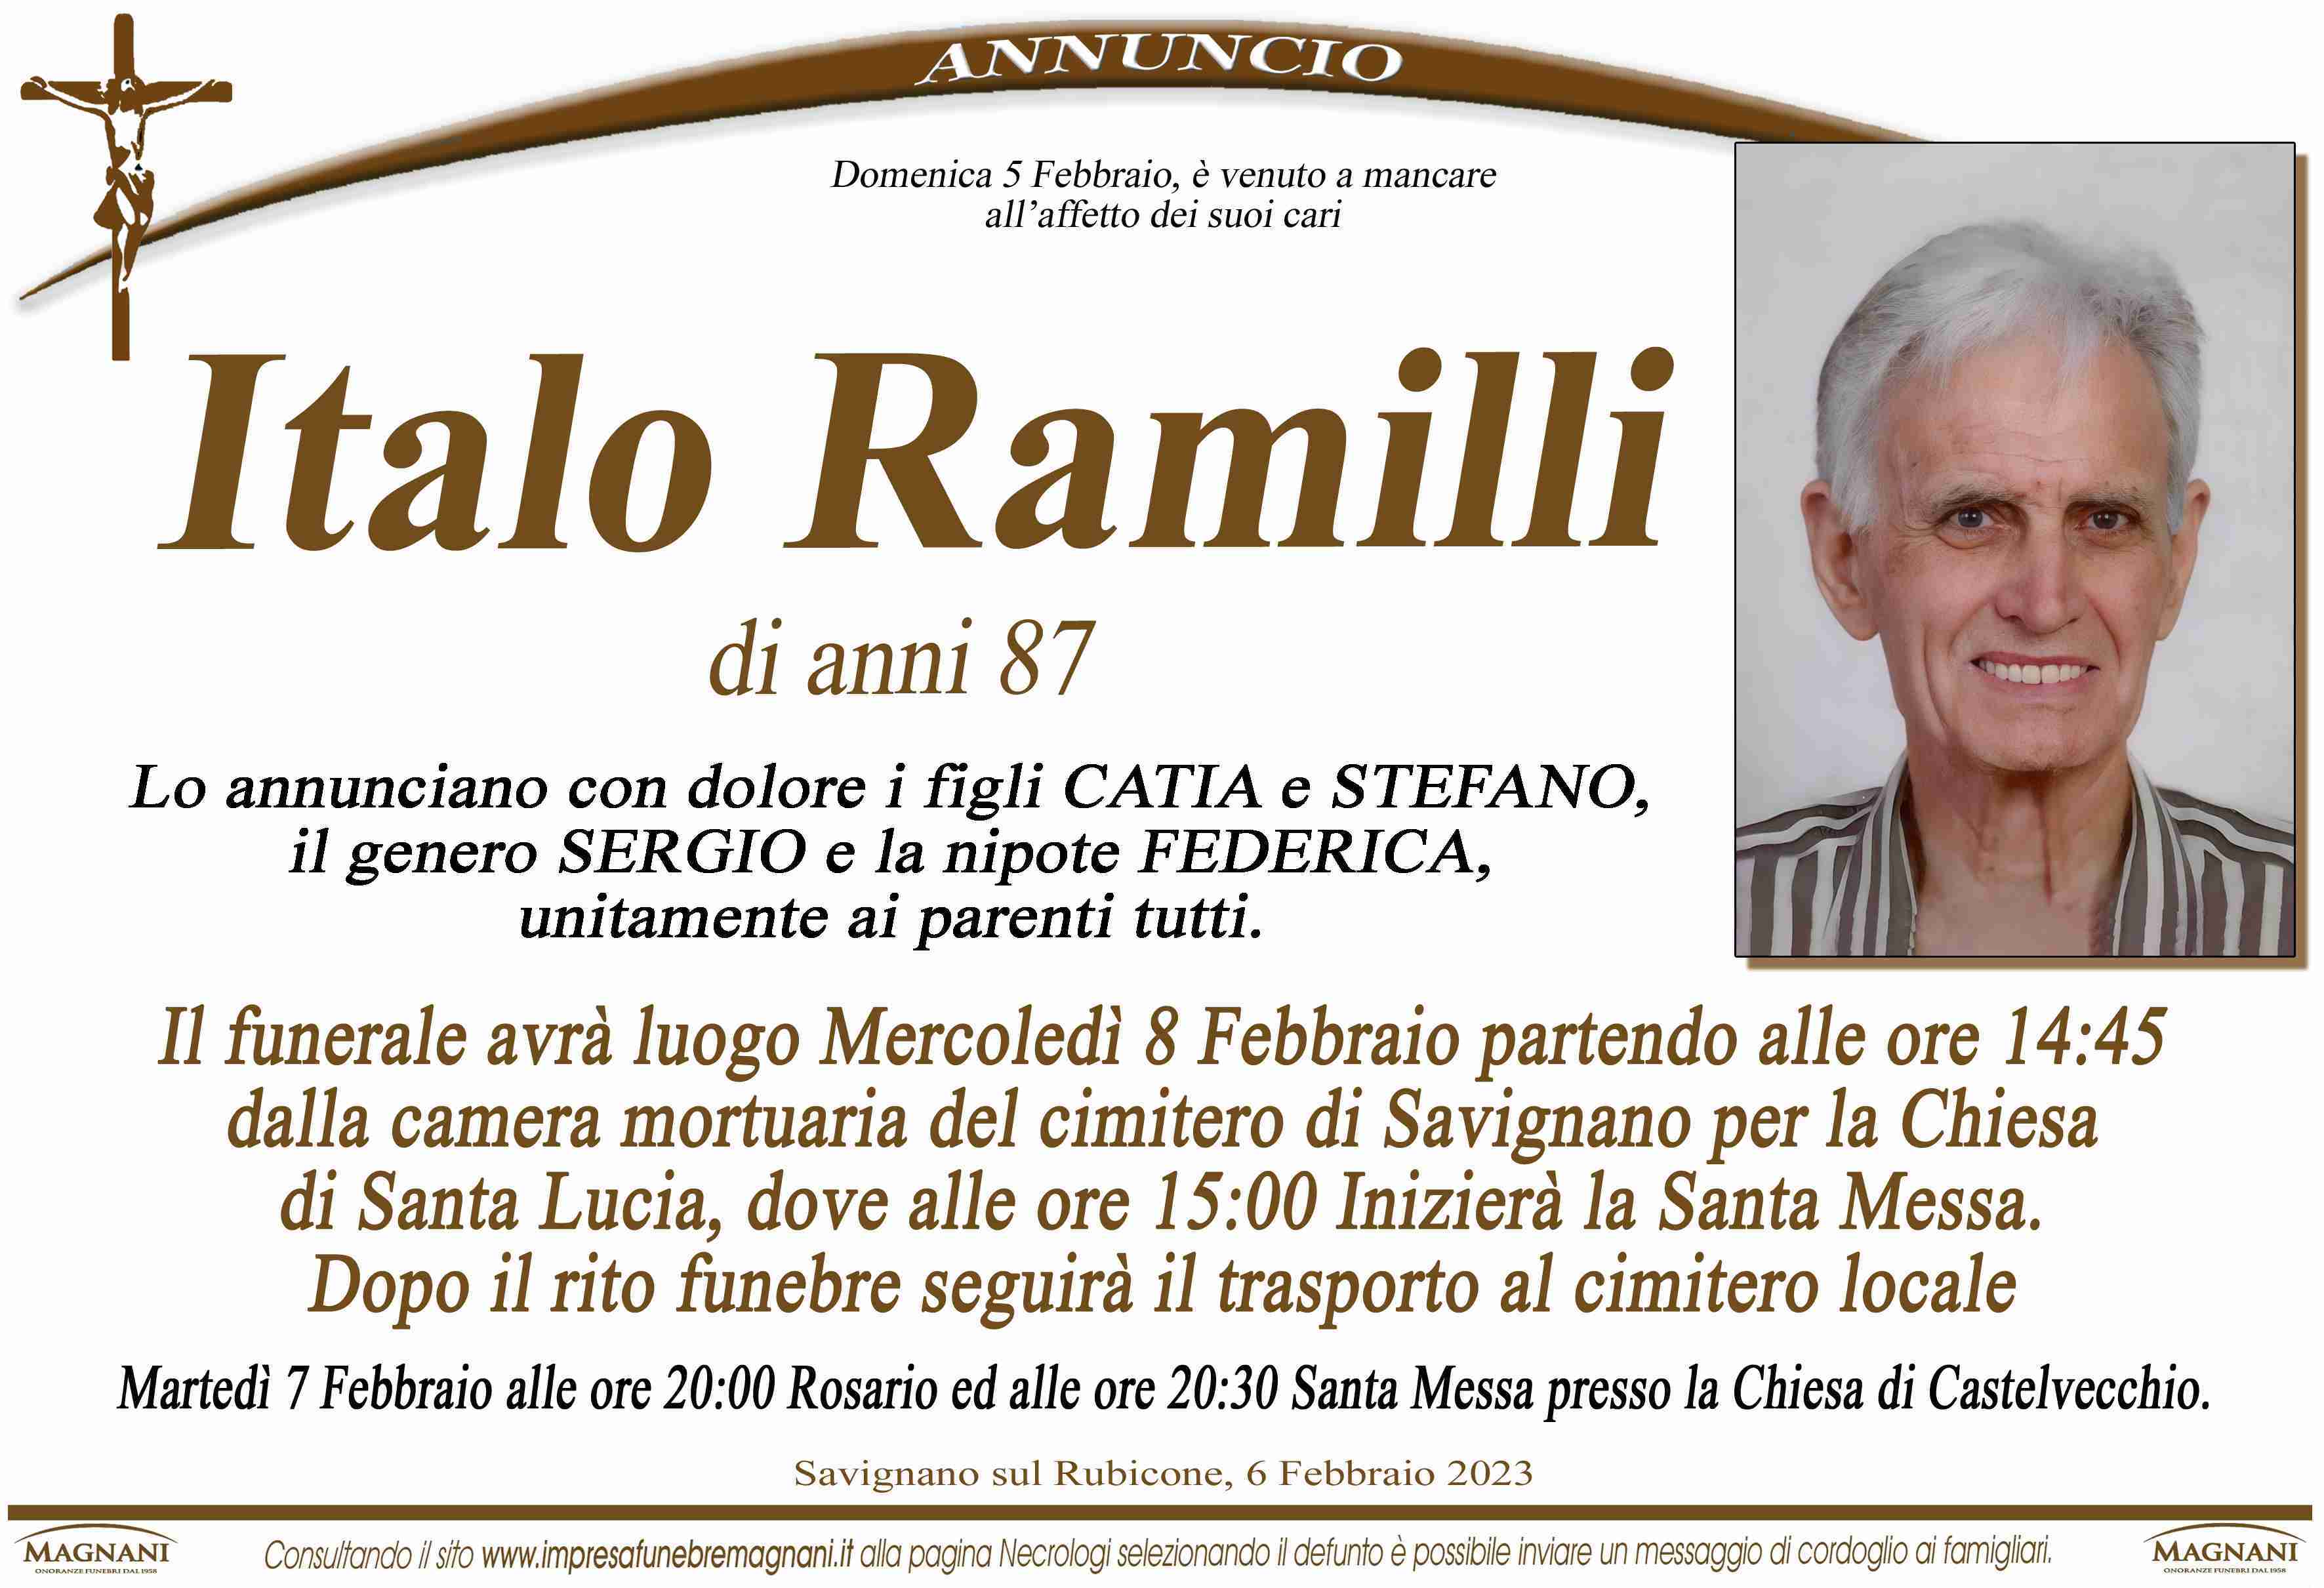 Italo Ramilli